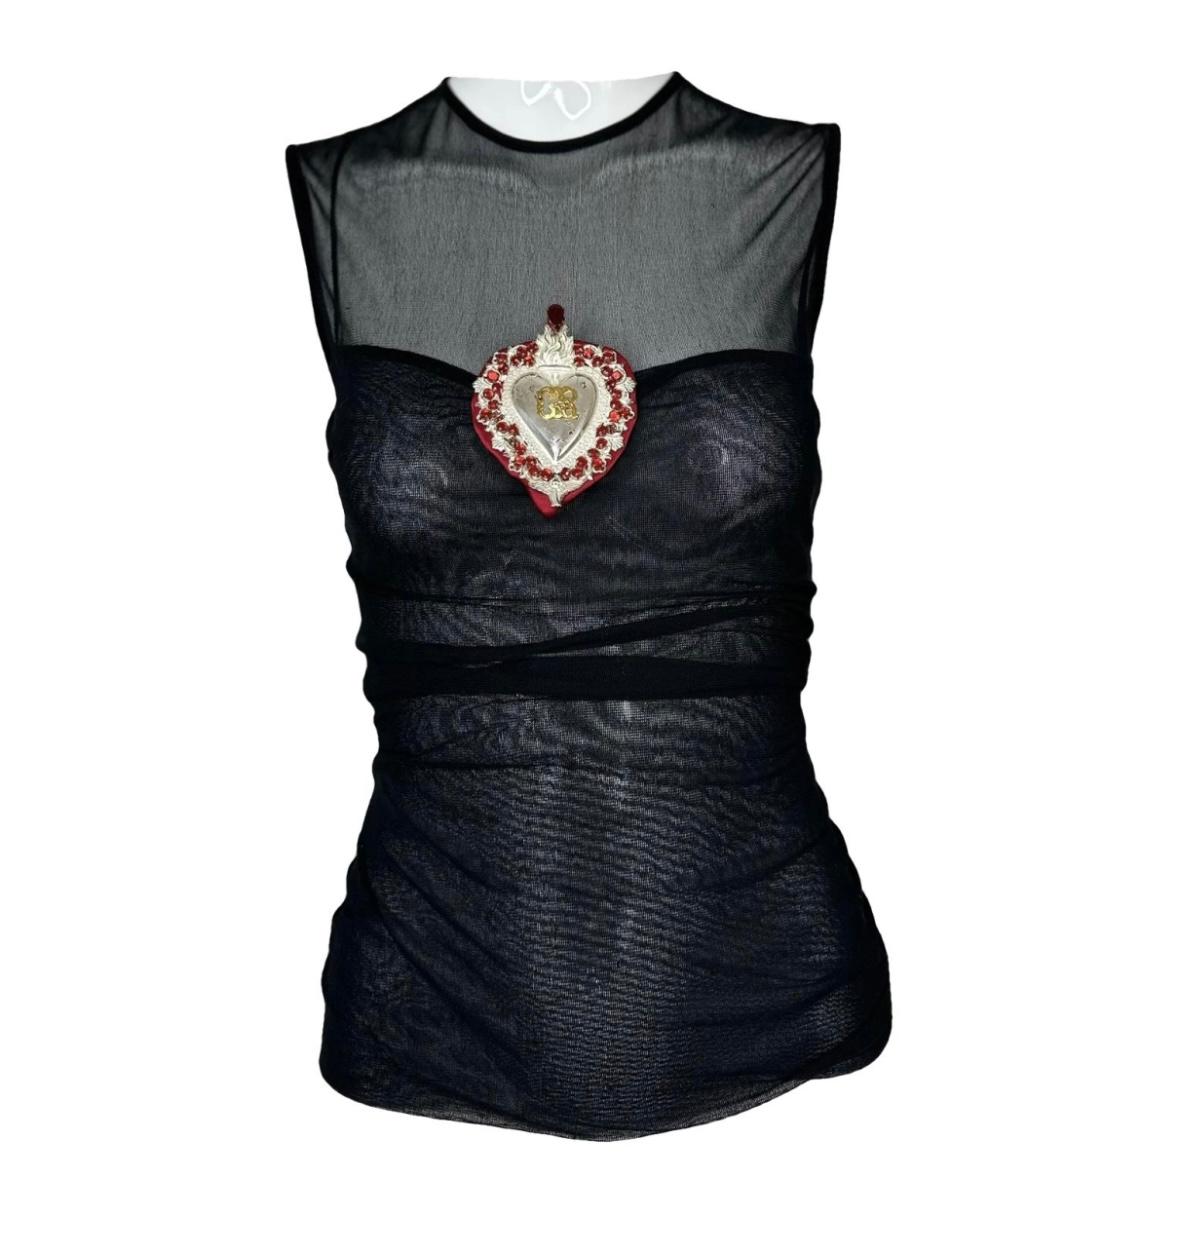 Pièce de collection !

Dolce Gabbana 1998 Stromboli collection runway heart mesh top 

Taille 40, convient comme XS-S
Bon état de NO AGE avec quelques signes d'usure et d'âge. Voir les photos 

Fermeture à glissière dans le dos